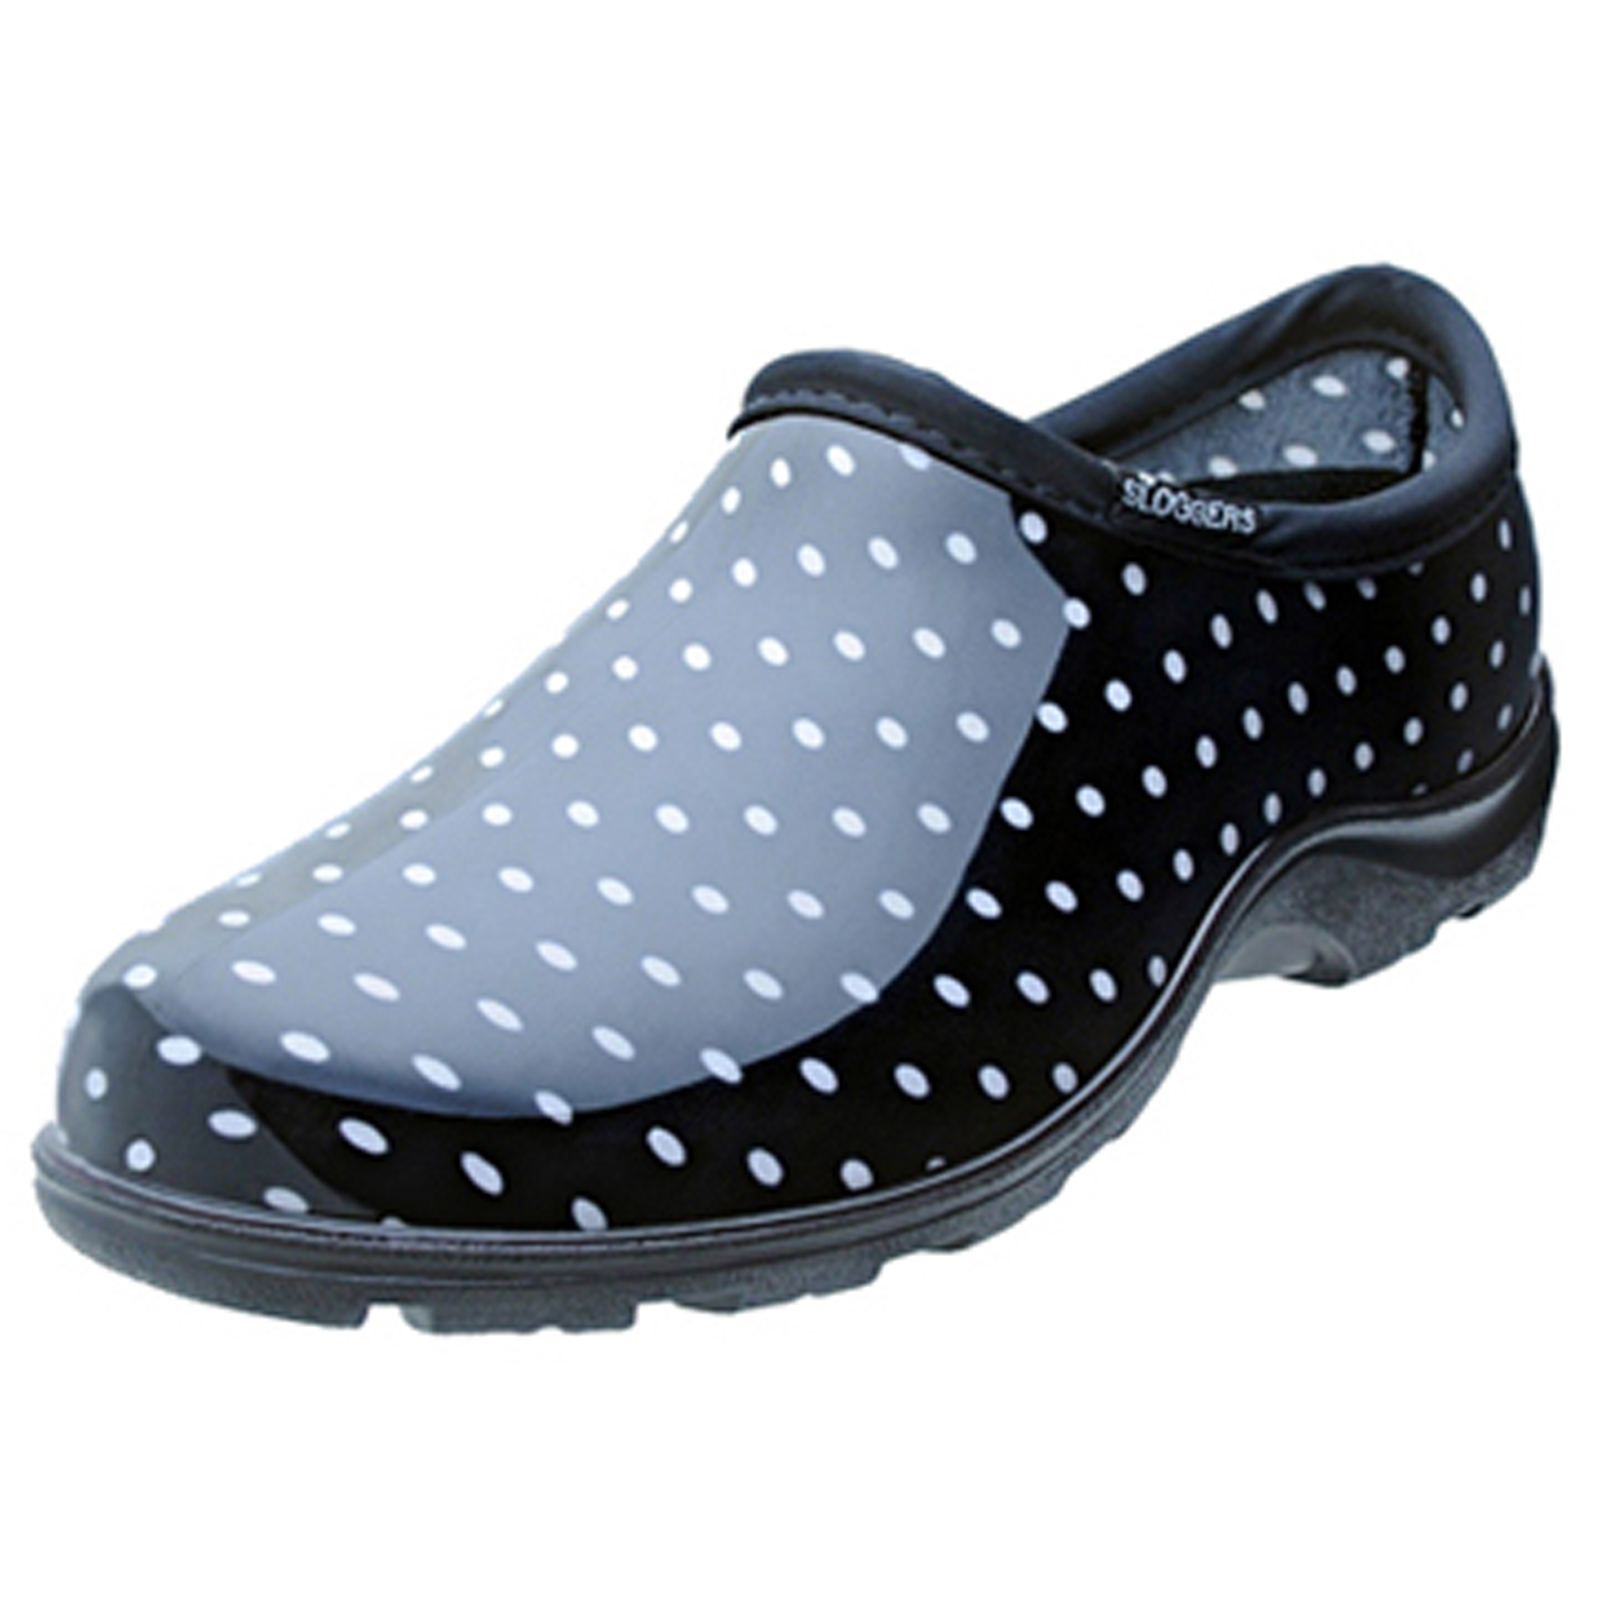 Principle Plastics PPL5113BP07 Sloggers Black & White Polka Dot Shoes, Women&#8217;s Size 7